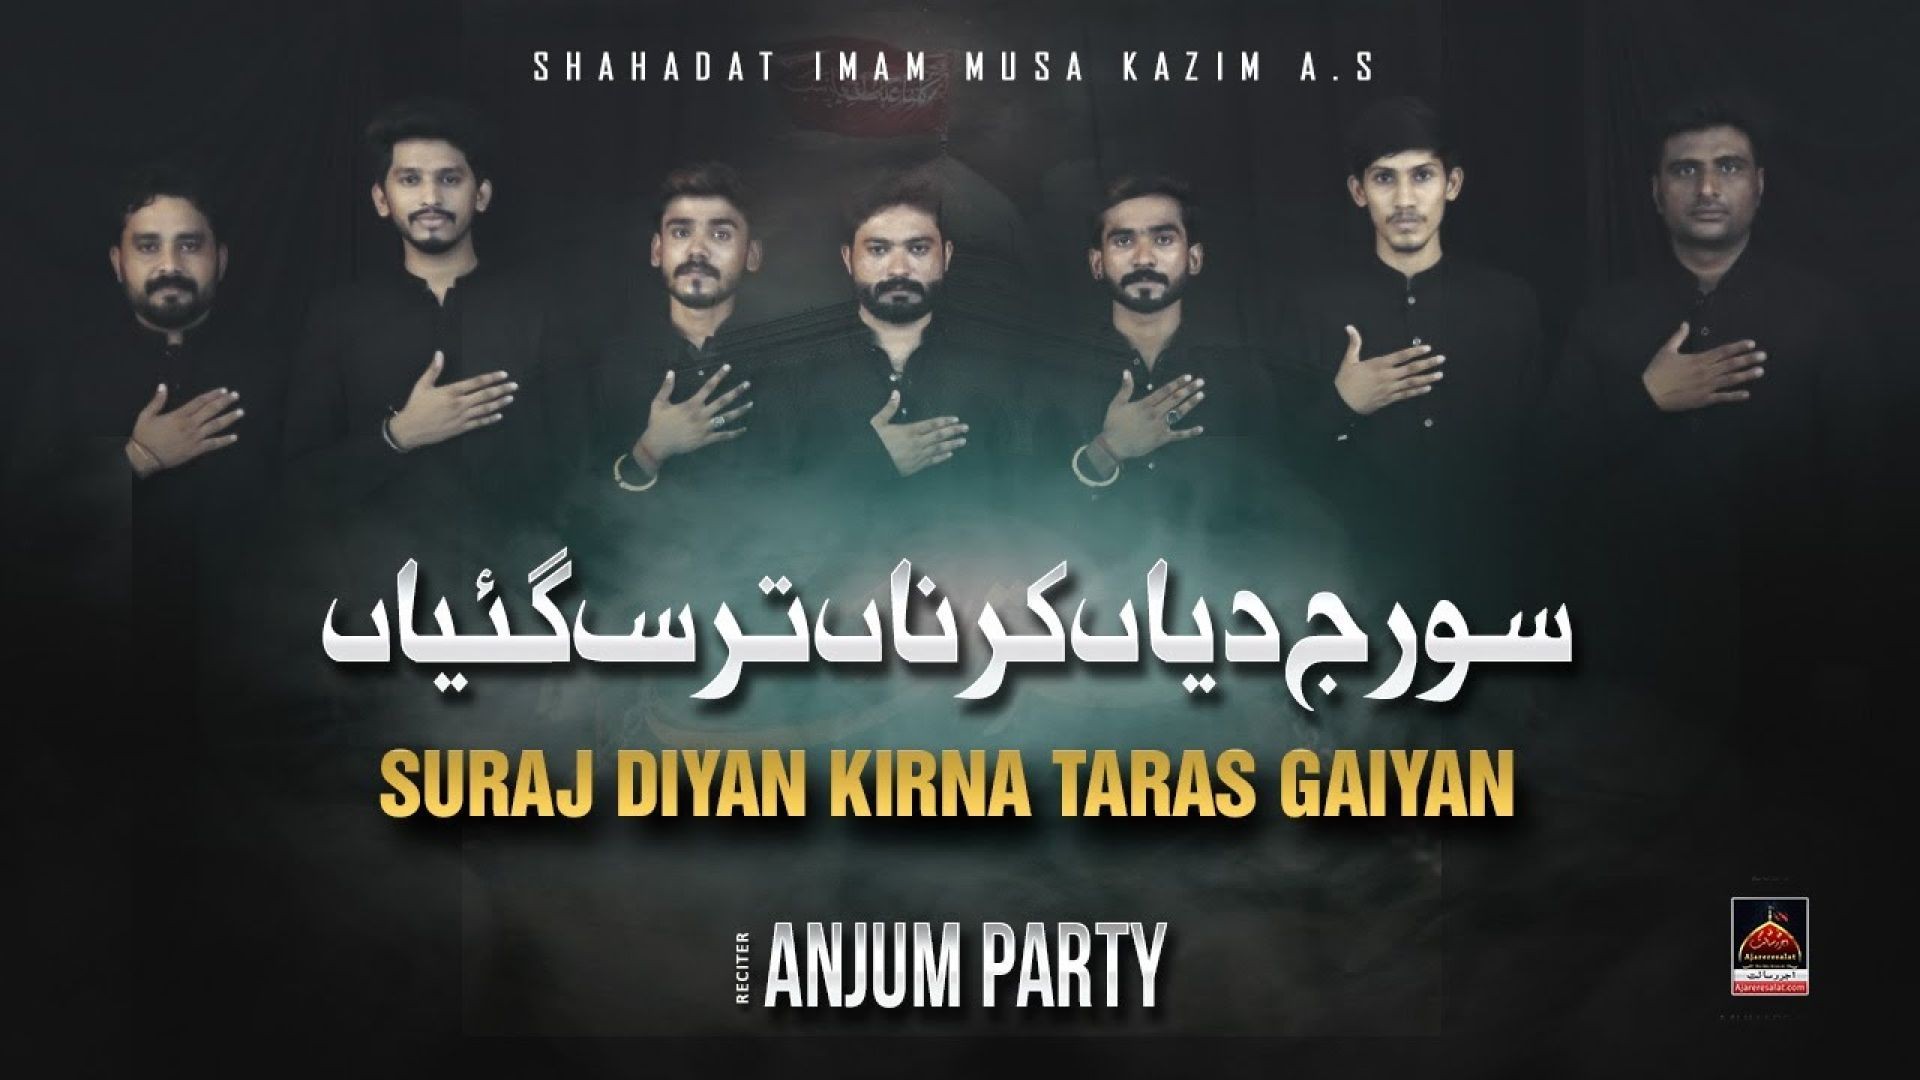 Suraj Diyan Kirna Taras Gaiyan - Anjum Party | Noha Imam Musa Kazim A.S | 2022